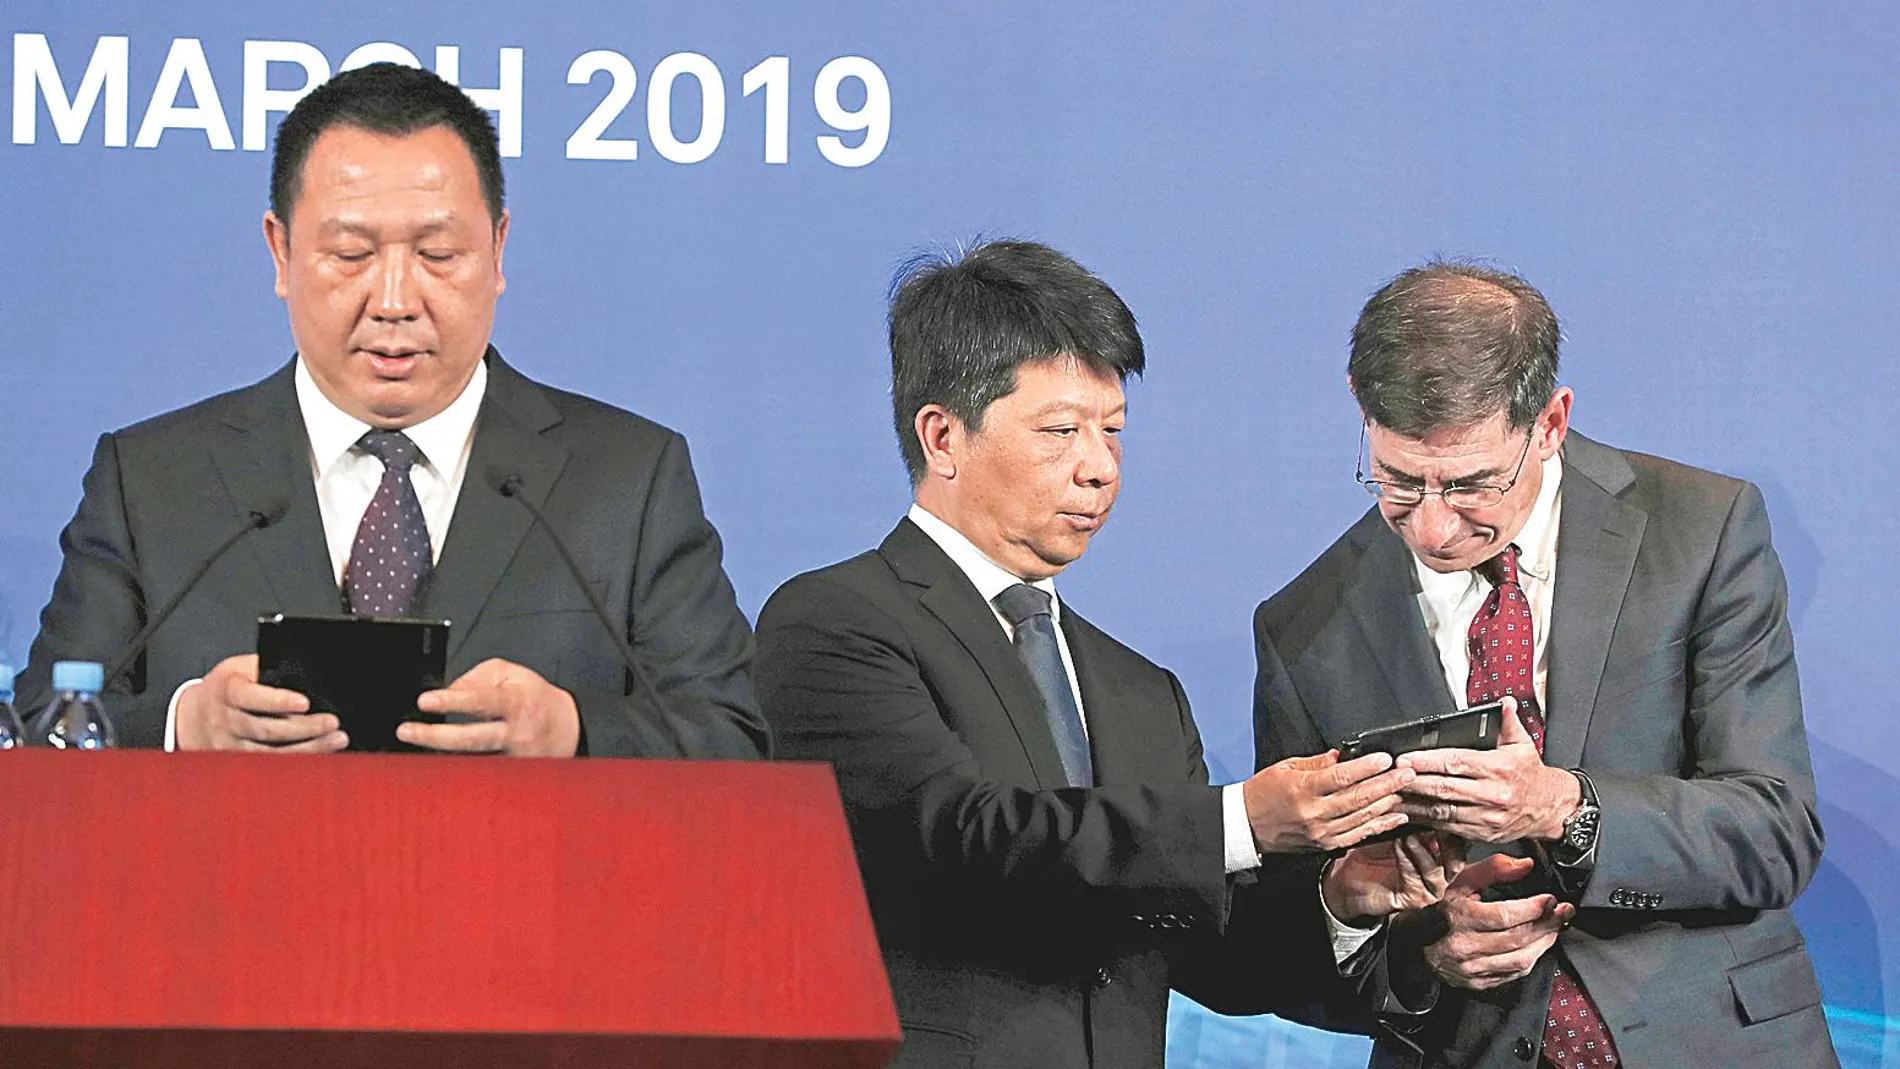 El presidente rotatorio de Huawei conversa con el socio Glen Nager mientras el jefe legal de la compañia comparece ante la Prensa ayer en Shenzhen